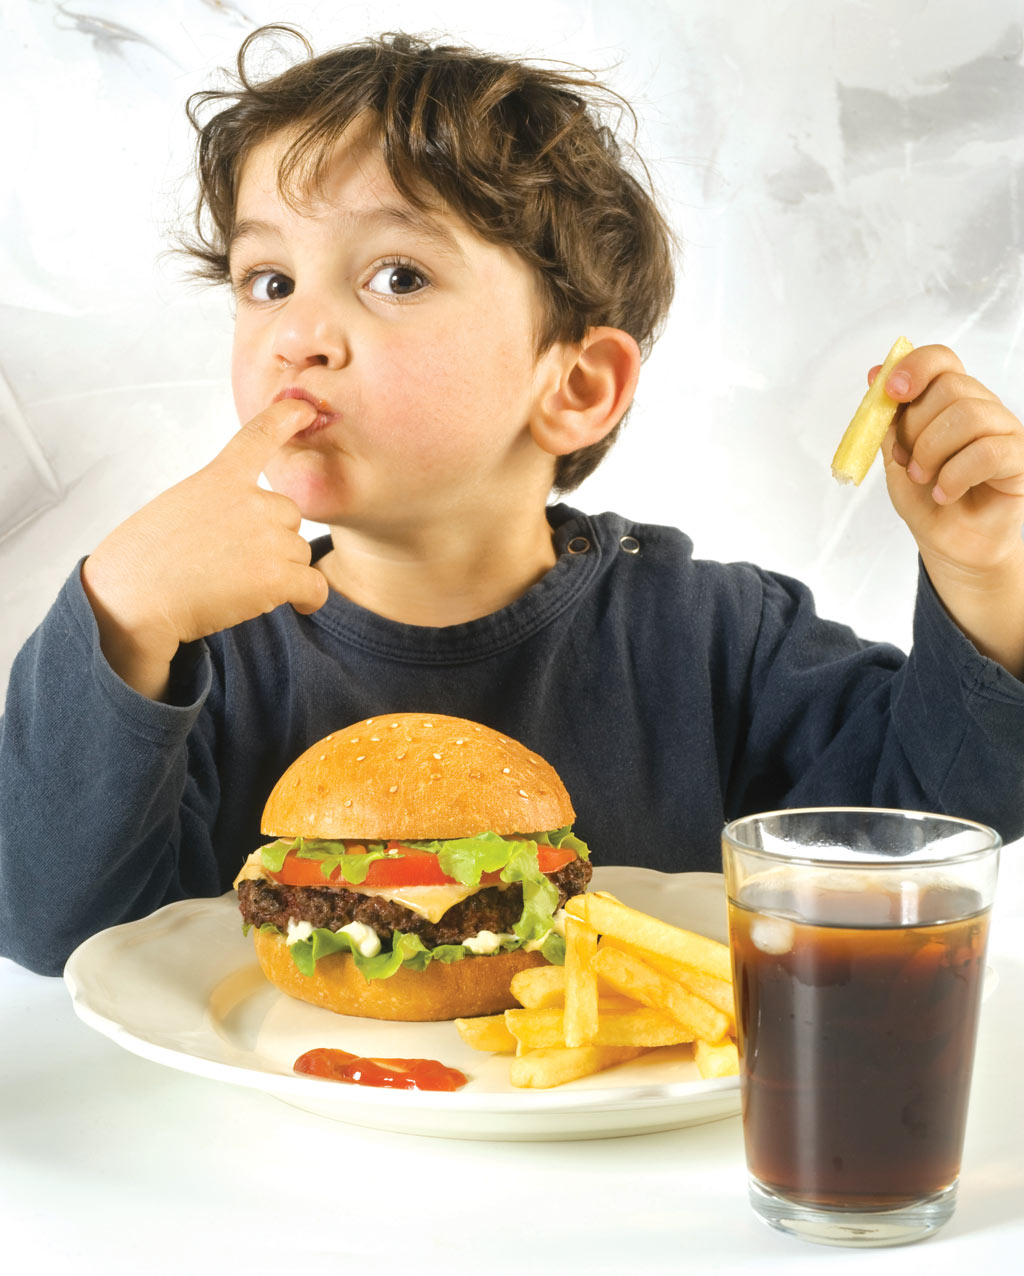 Medic: Ce se întâmplă cu organismul copilului dacă îi dăm shaorma sau fast-food